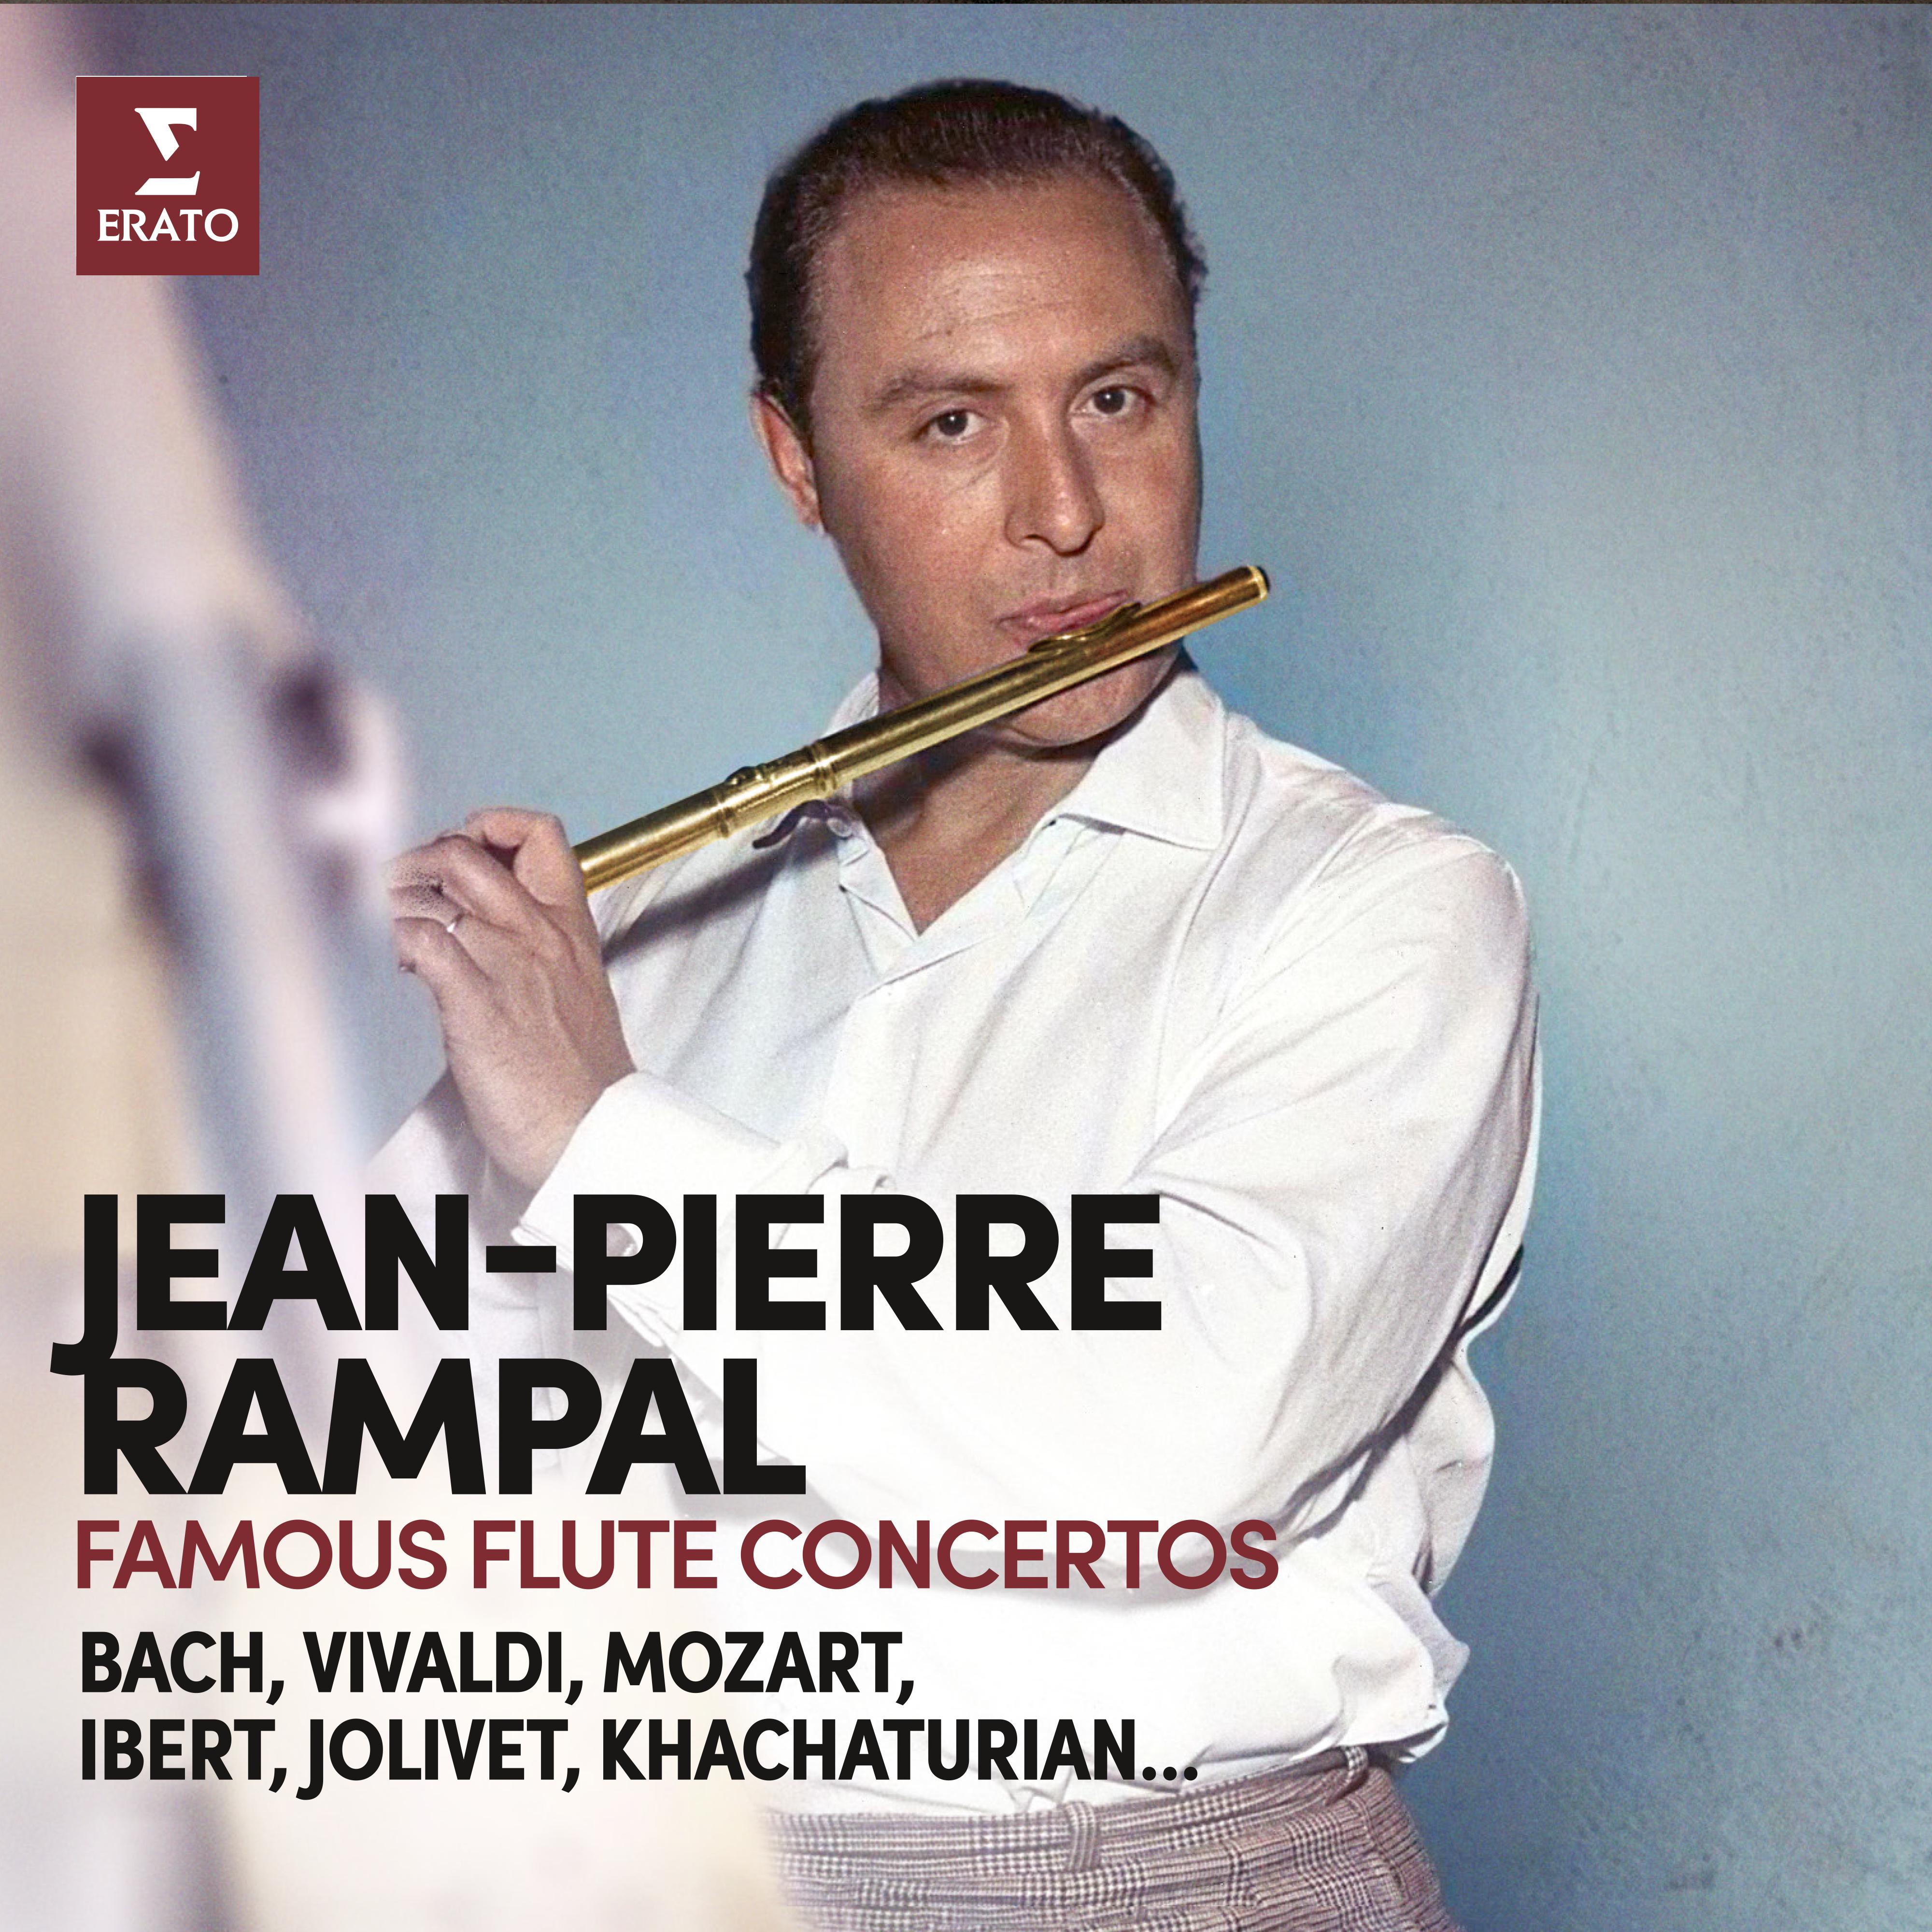 Jean-Pierre Rampal - Flute Concerto in D Minor, Op. 46b:I. Allegro con fermezza (Transcr. Rampal of Violin Concerto)